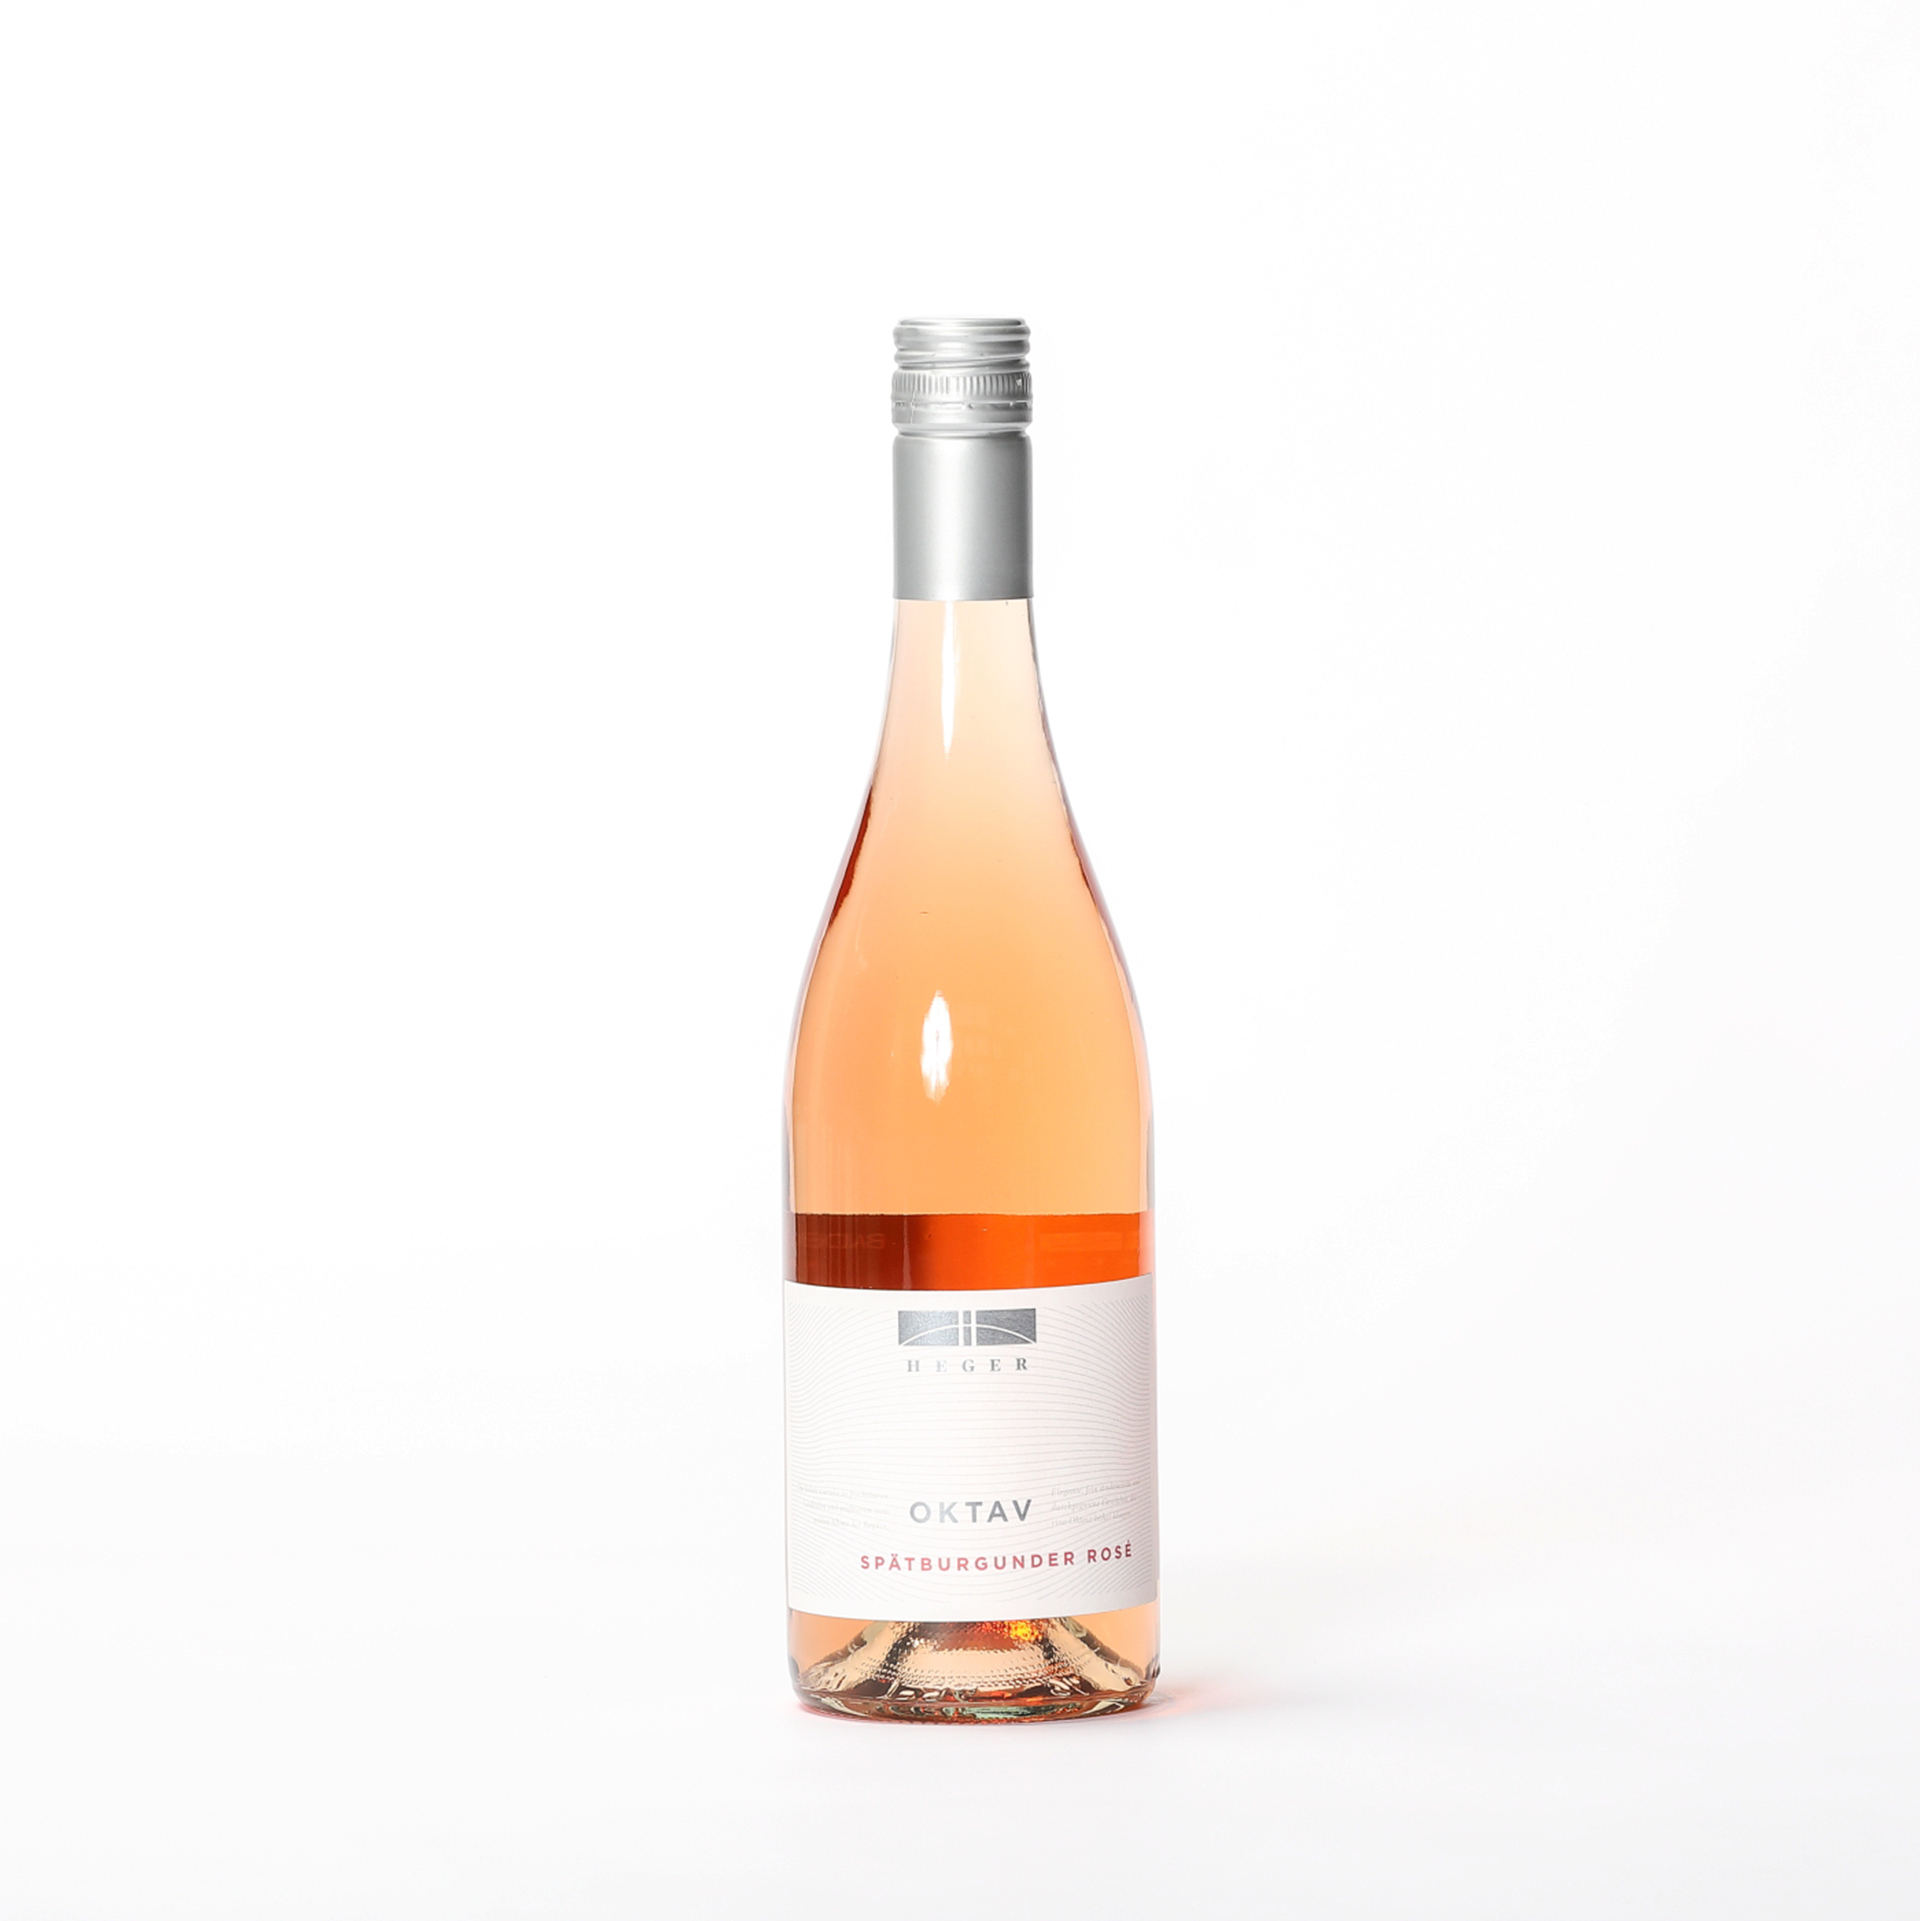 Produktbild Oktav Spätburgunder Rosé 2019 - Weinhaus Heger| DINZLER Kaffeerösterei